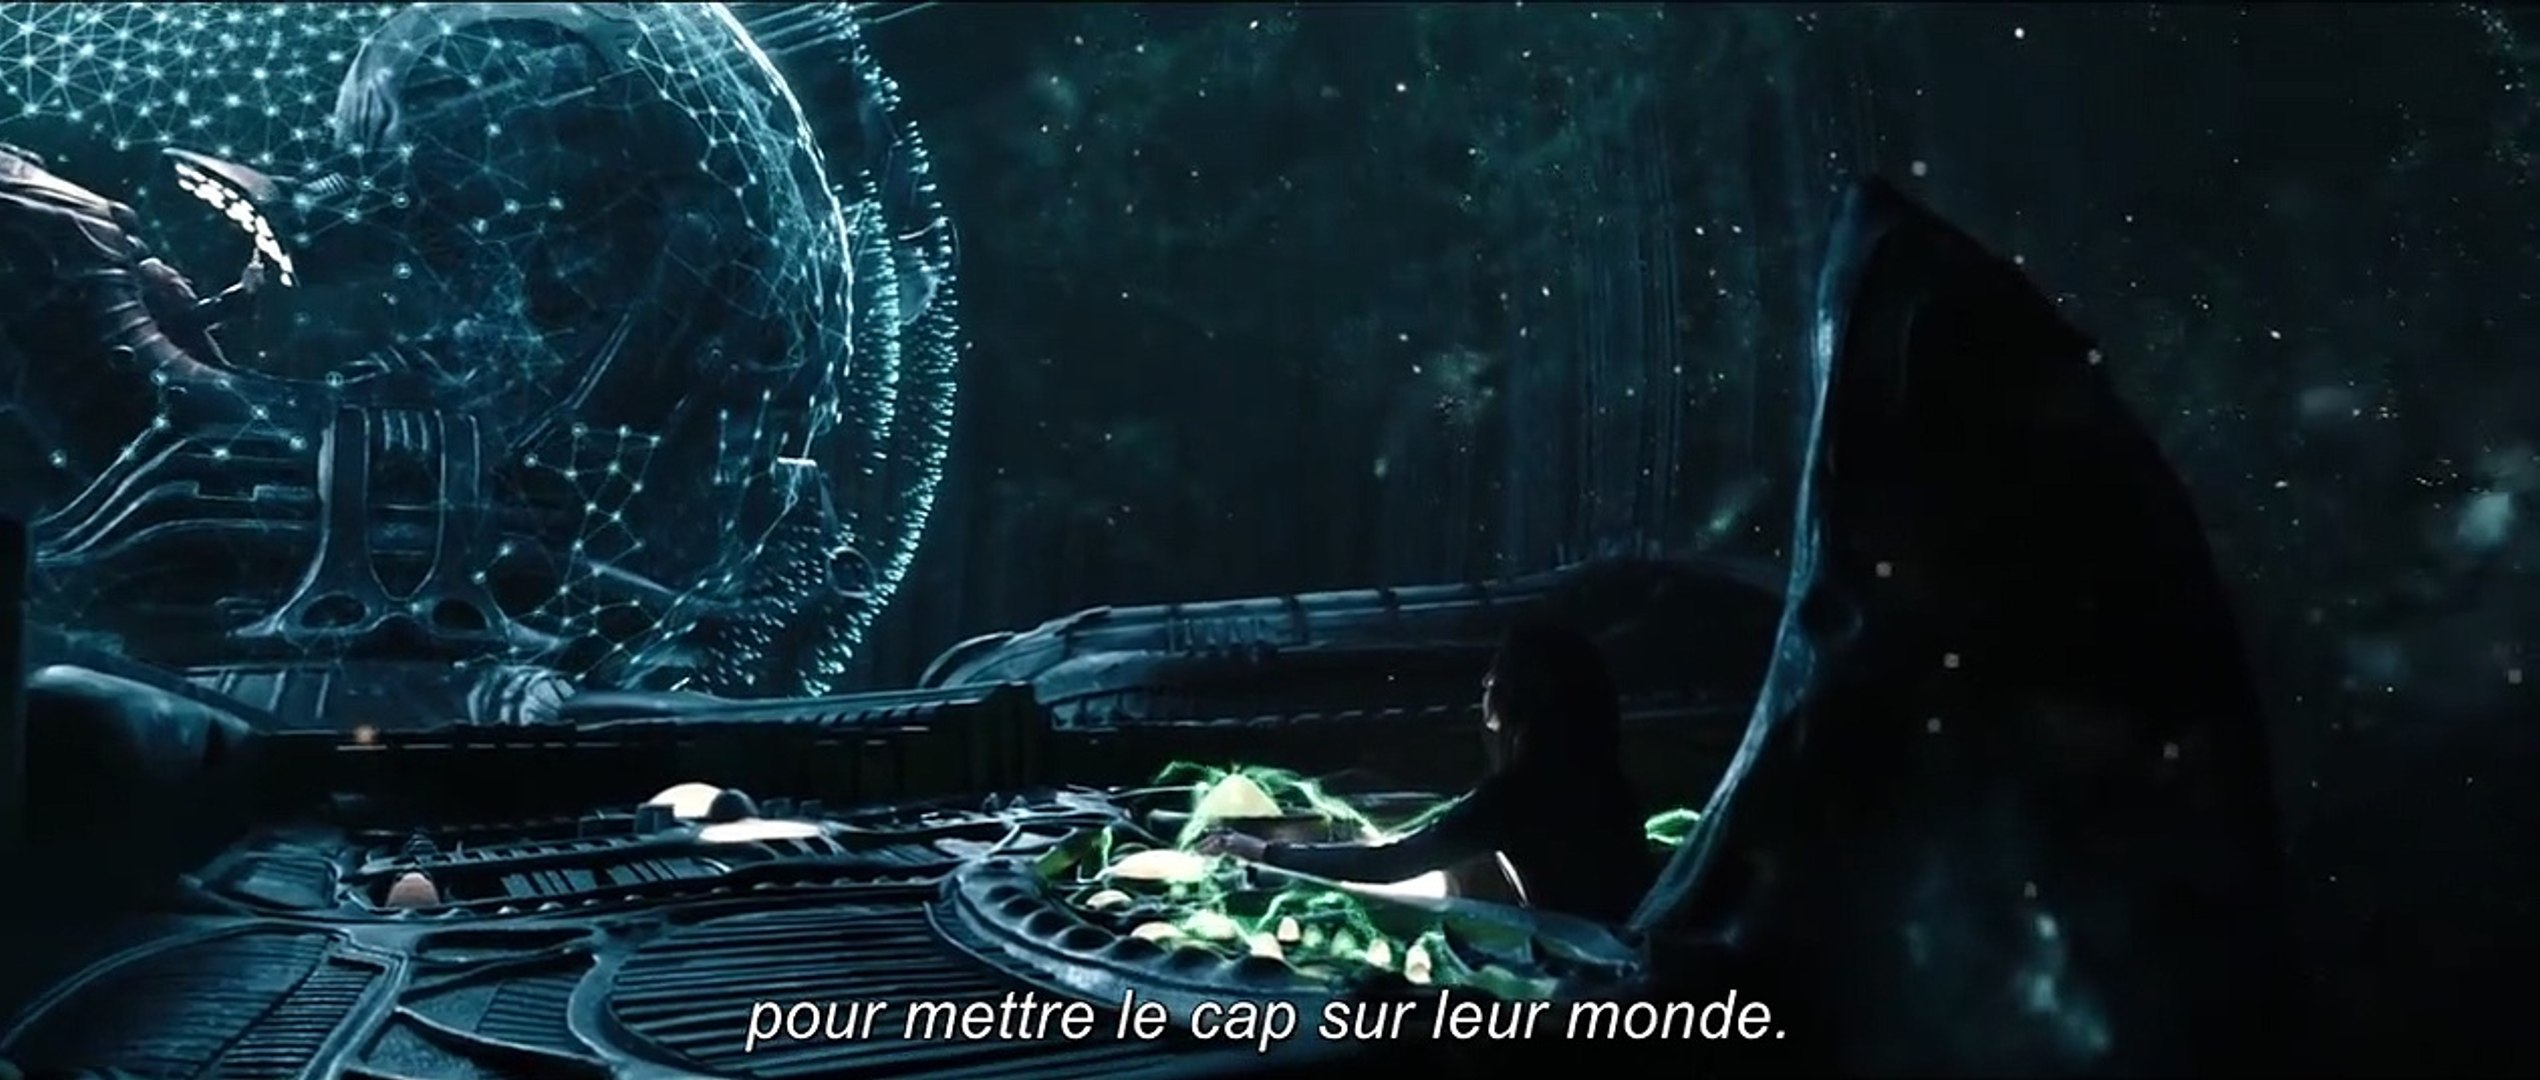 Alien: Covenant EXTRAIT VO "La traversée" - Vidéo Dailymotion